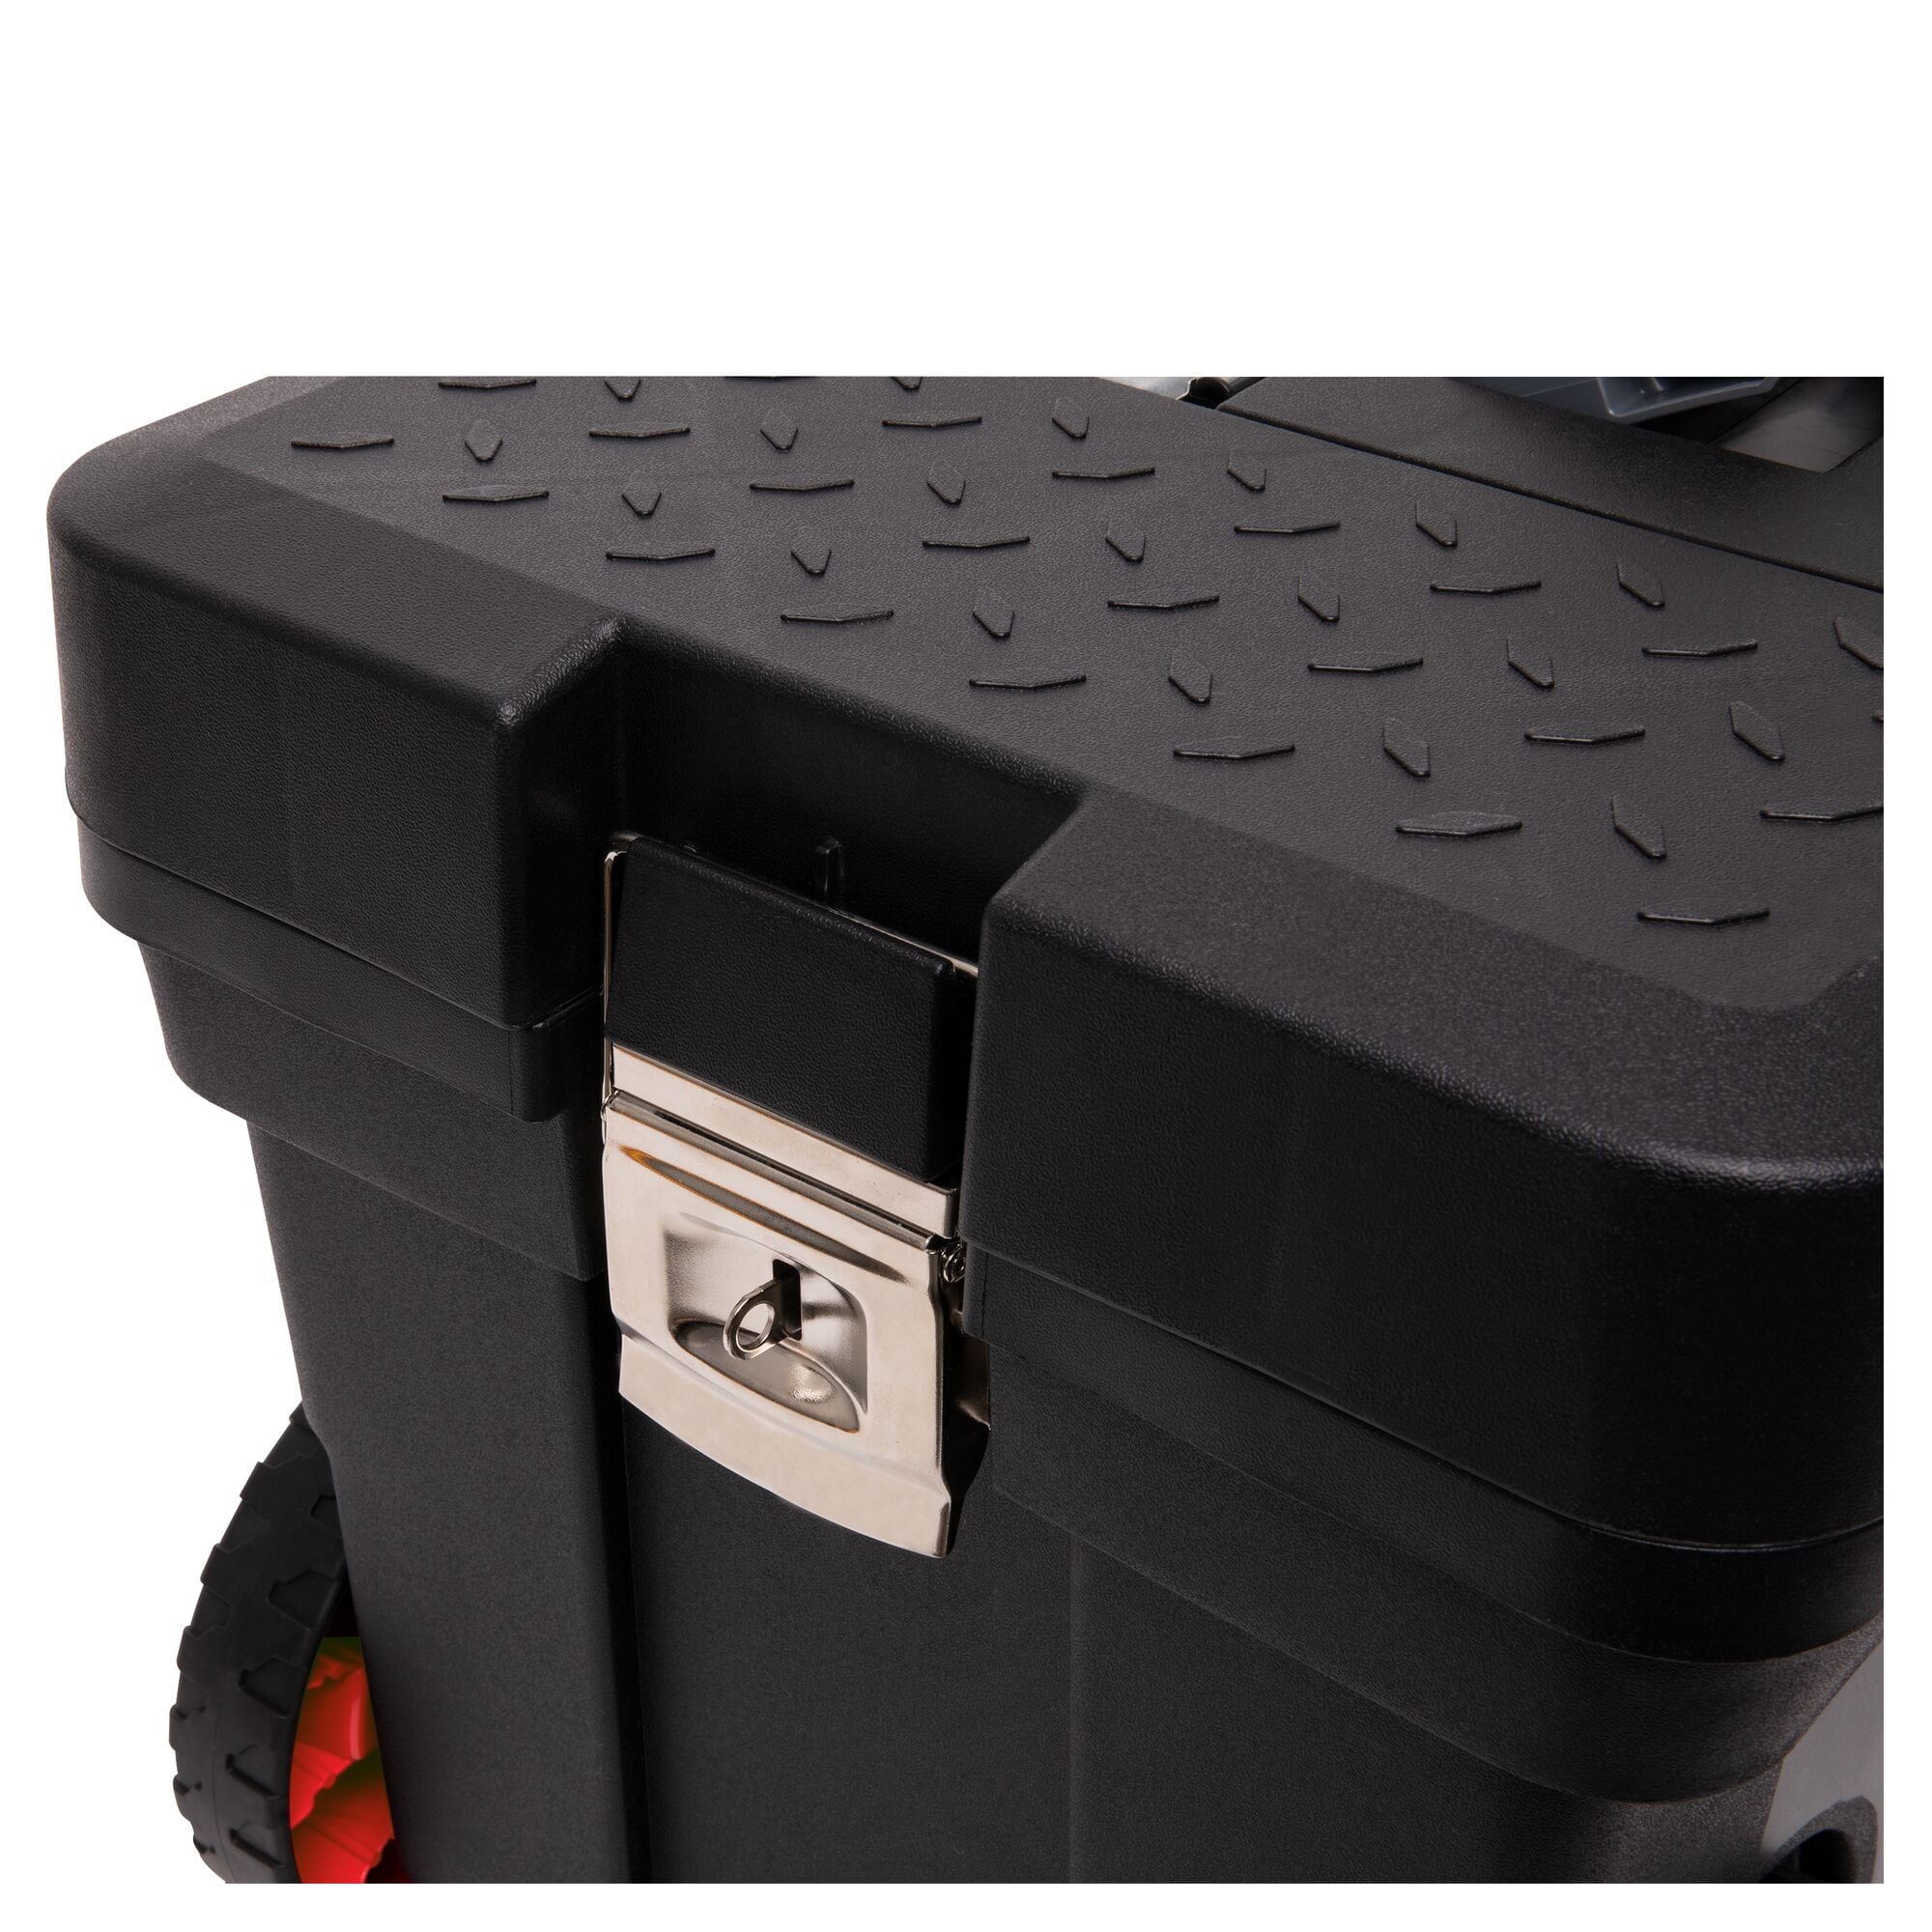 Stanley 11.5-in Black Plastic Wheels Lockable Tool Box at